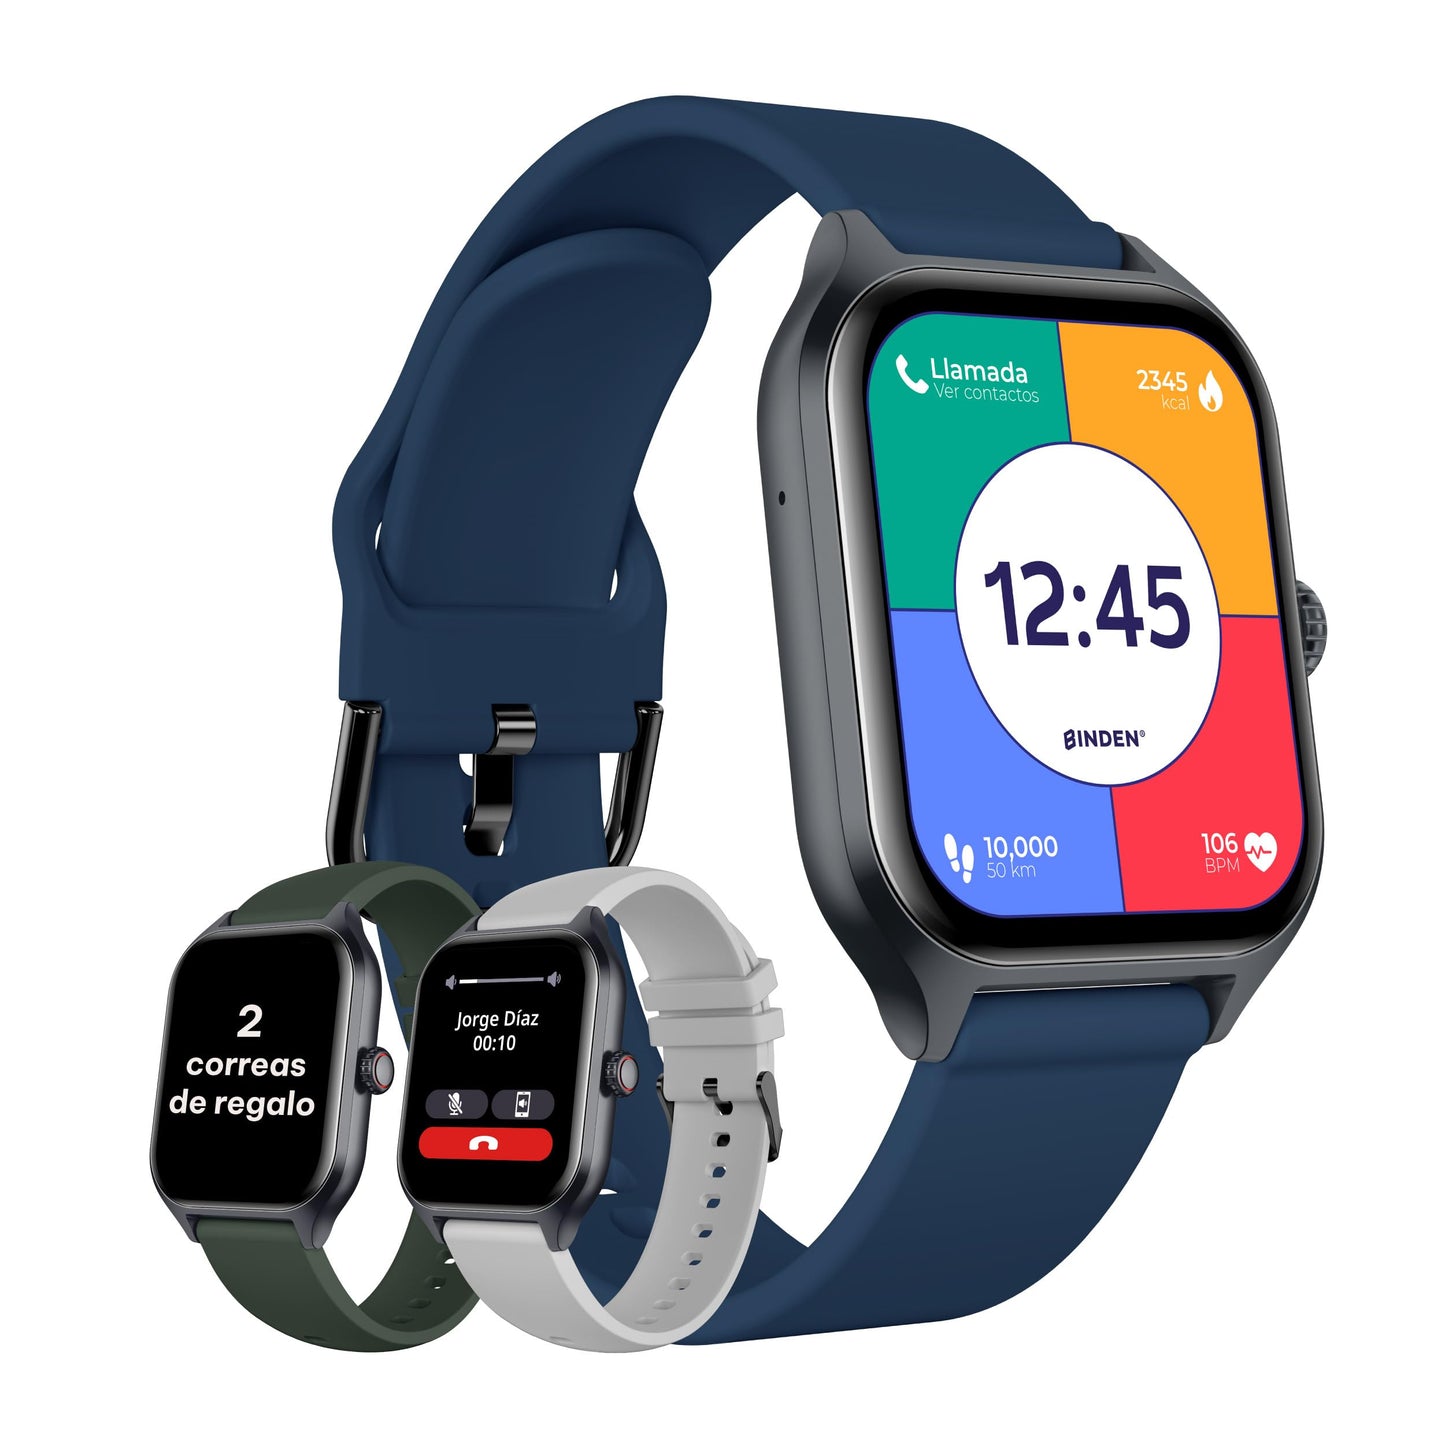 Smartwatch ERA Day Asistente de Voz Realiza Llamadas Bluetooth Notificaciones Salud Deportes Resistente a Salpicaduras Pantalla 1.96” HD Compatible con iOS y Android +2 Correas de Regalo Azul